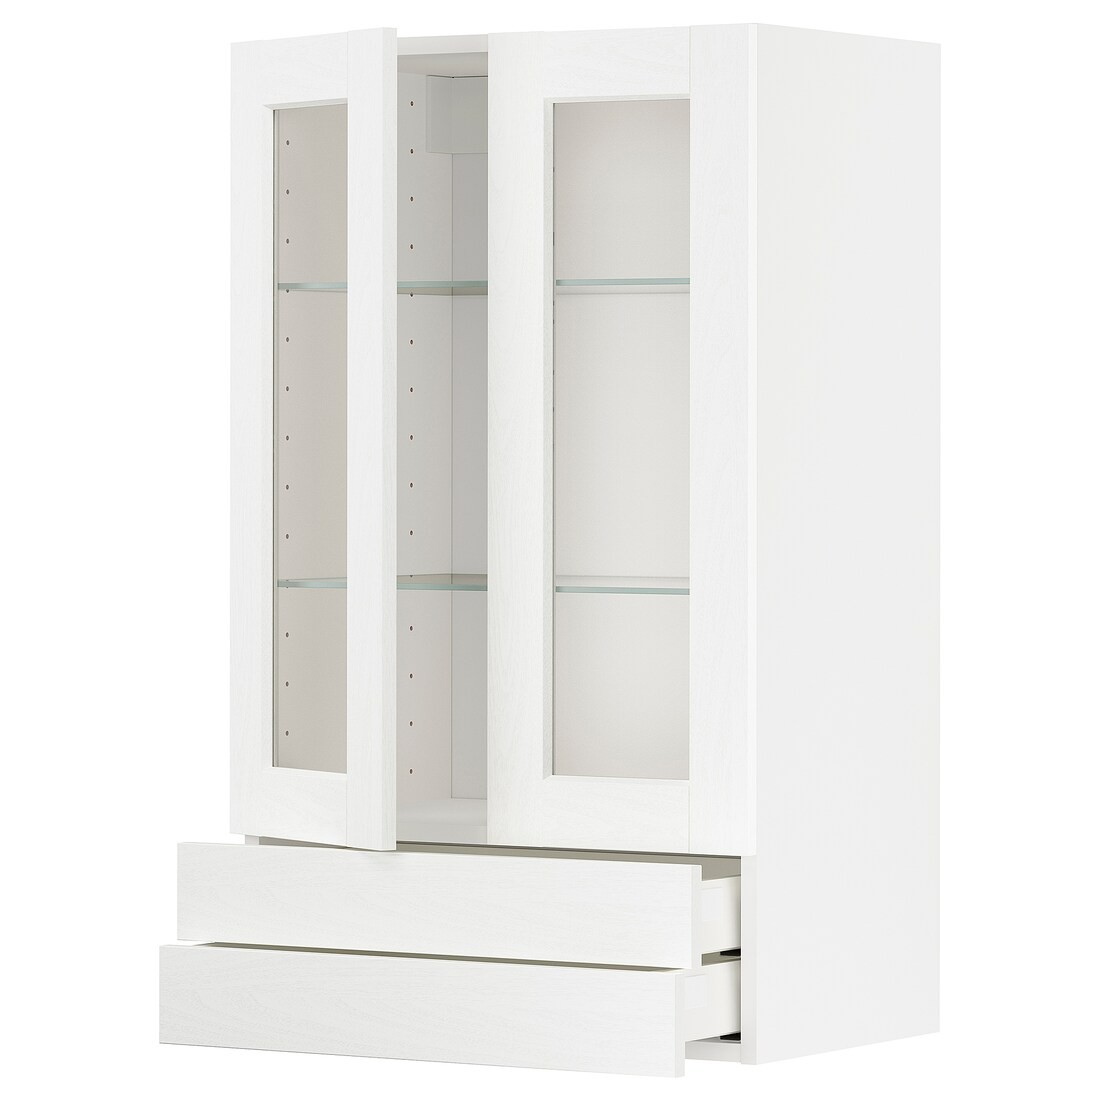 METOD МЕТОД / MAXIMERA МАКСИМЕРА Навесной шкаф / 2 стеклянные дверцы / 2 ящика, белый Enköping / белый имитация дерева, 60x100 см